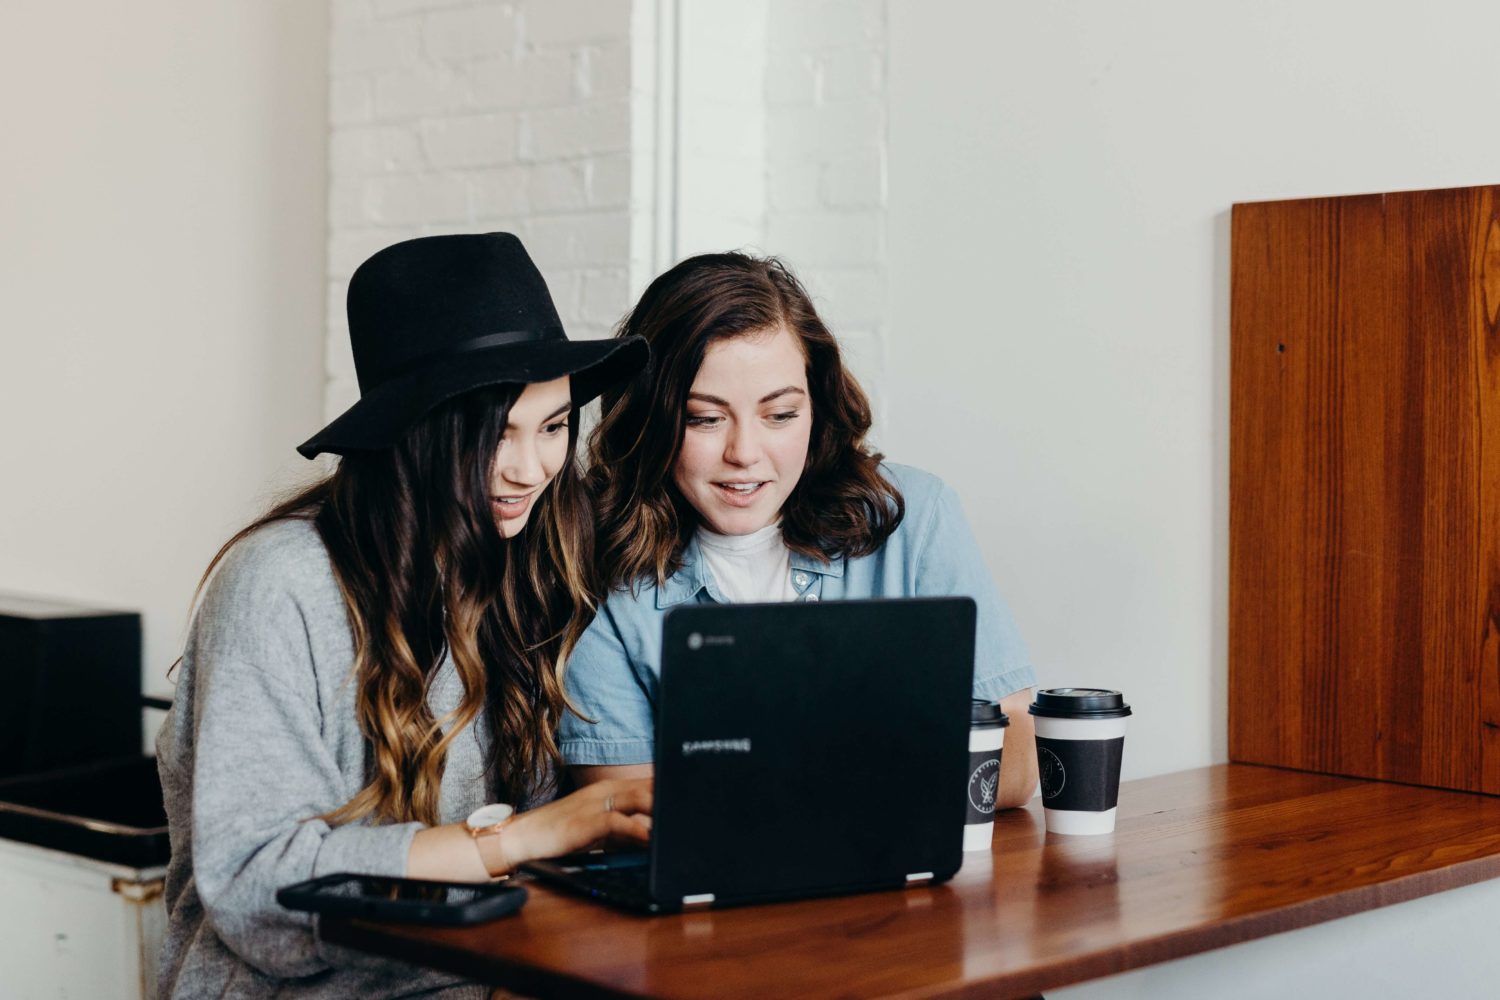 Two women watching a laptop